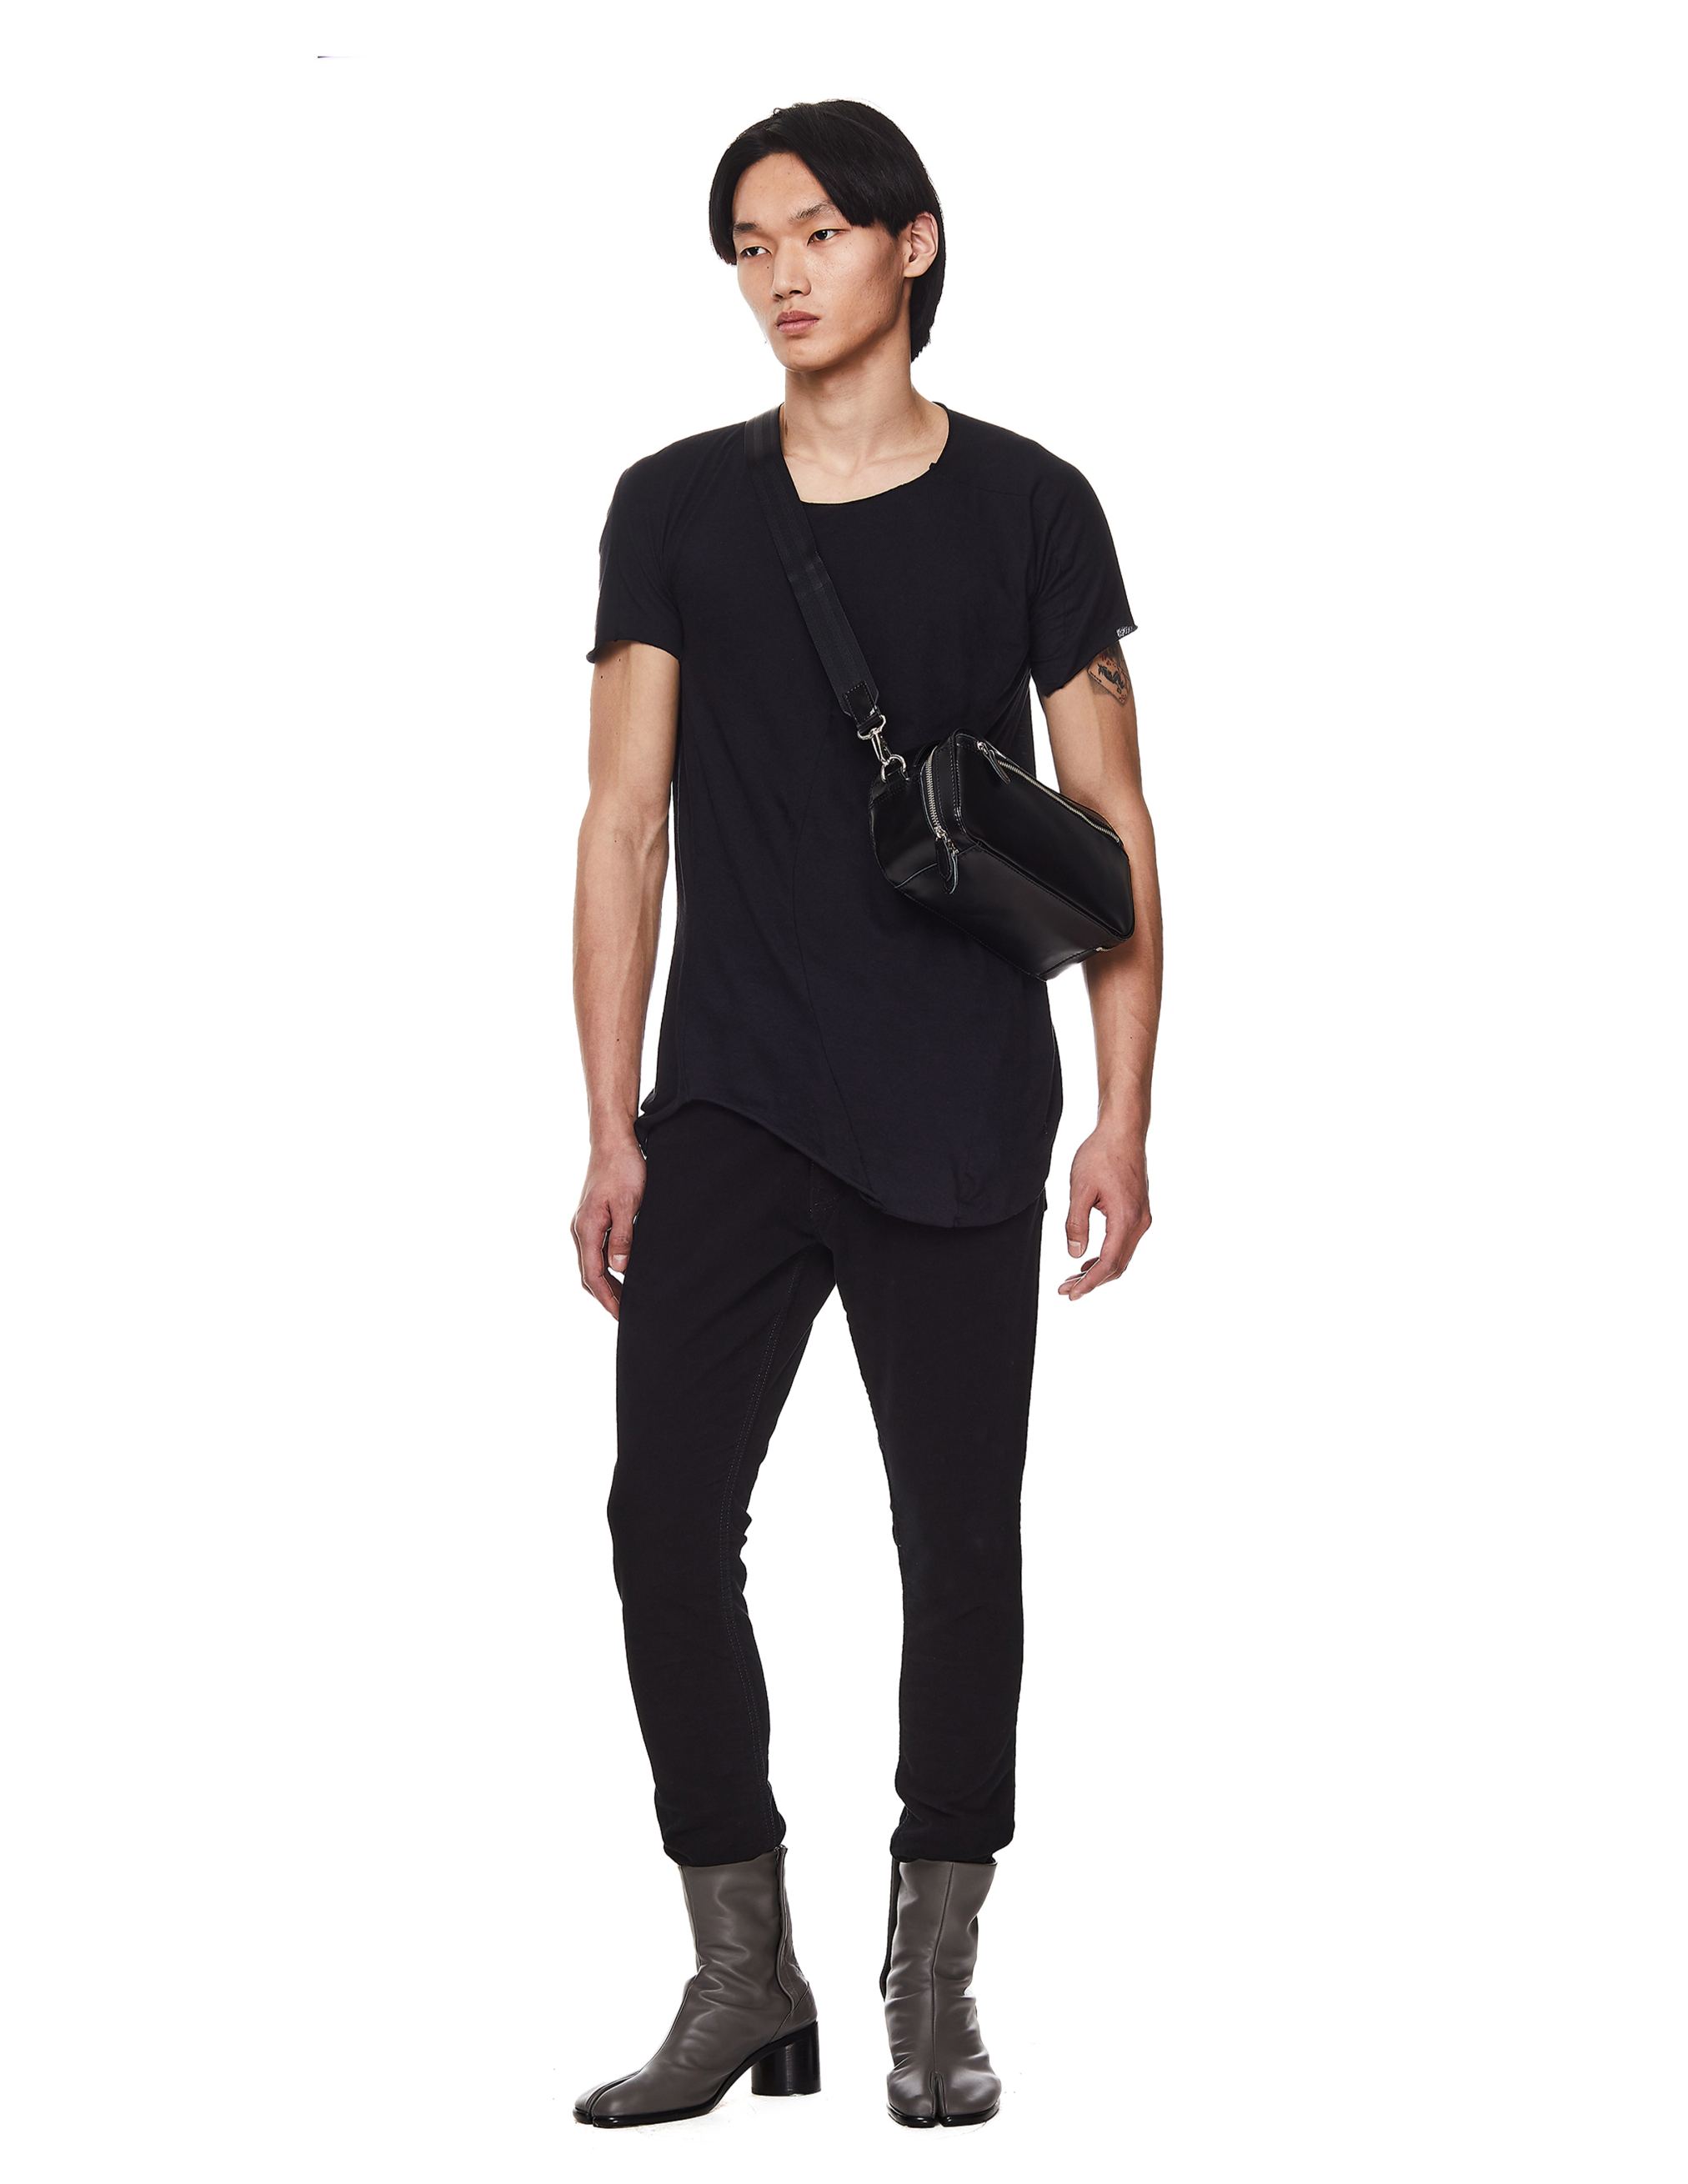 Черная футболка из хлопка и шерсти Leon Emanuel Blanck DIS-M-CT-01/blk, размер 52 DIS-M-CT-01/blk - фото 1